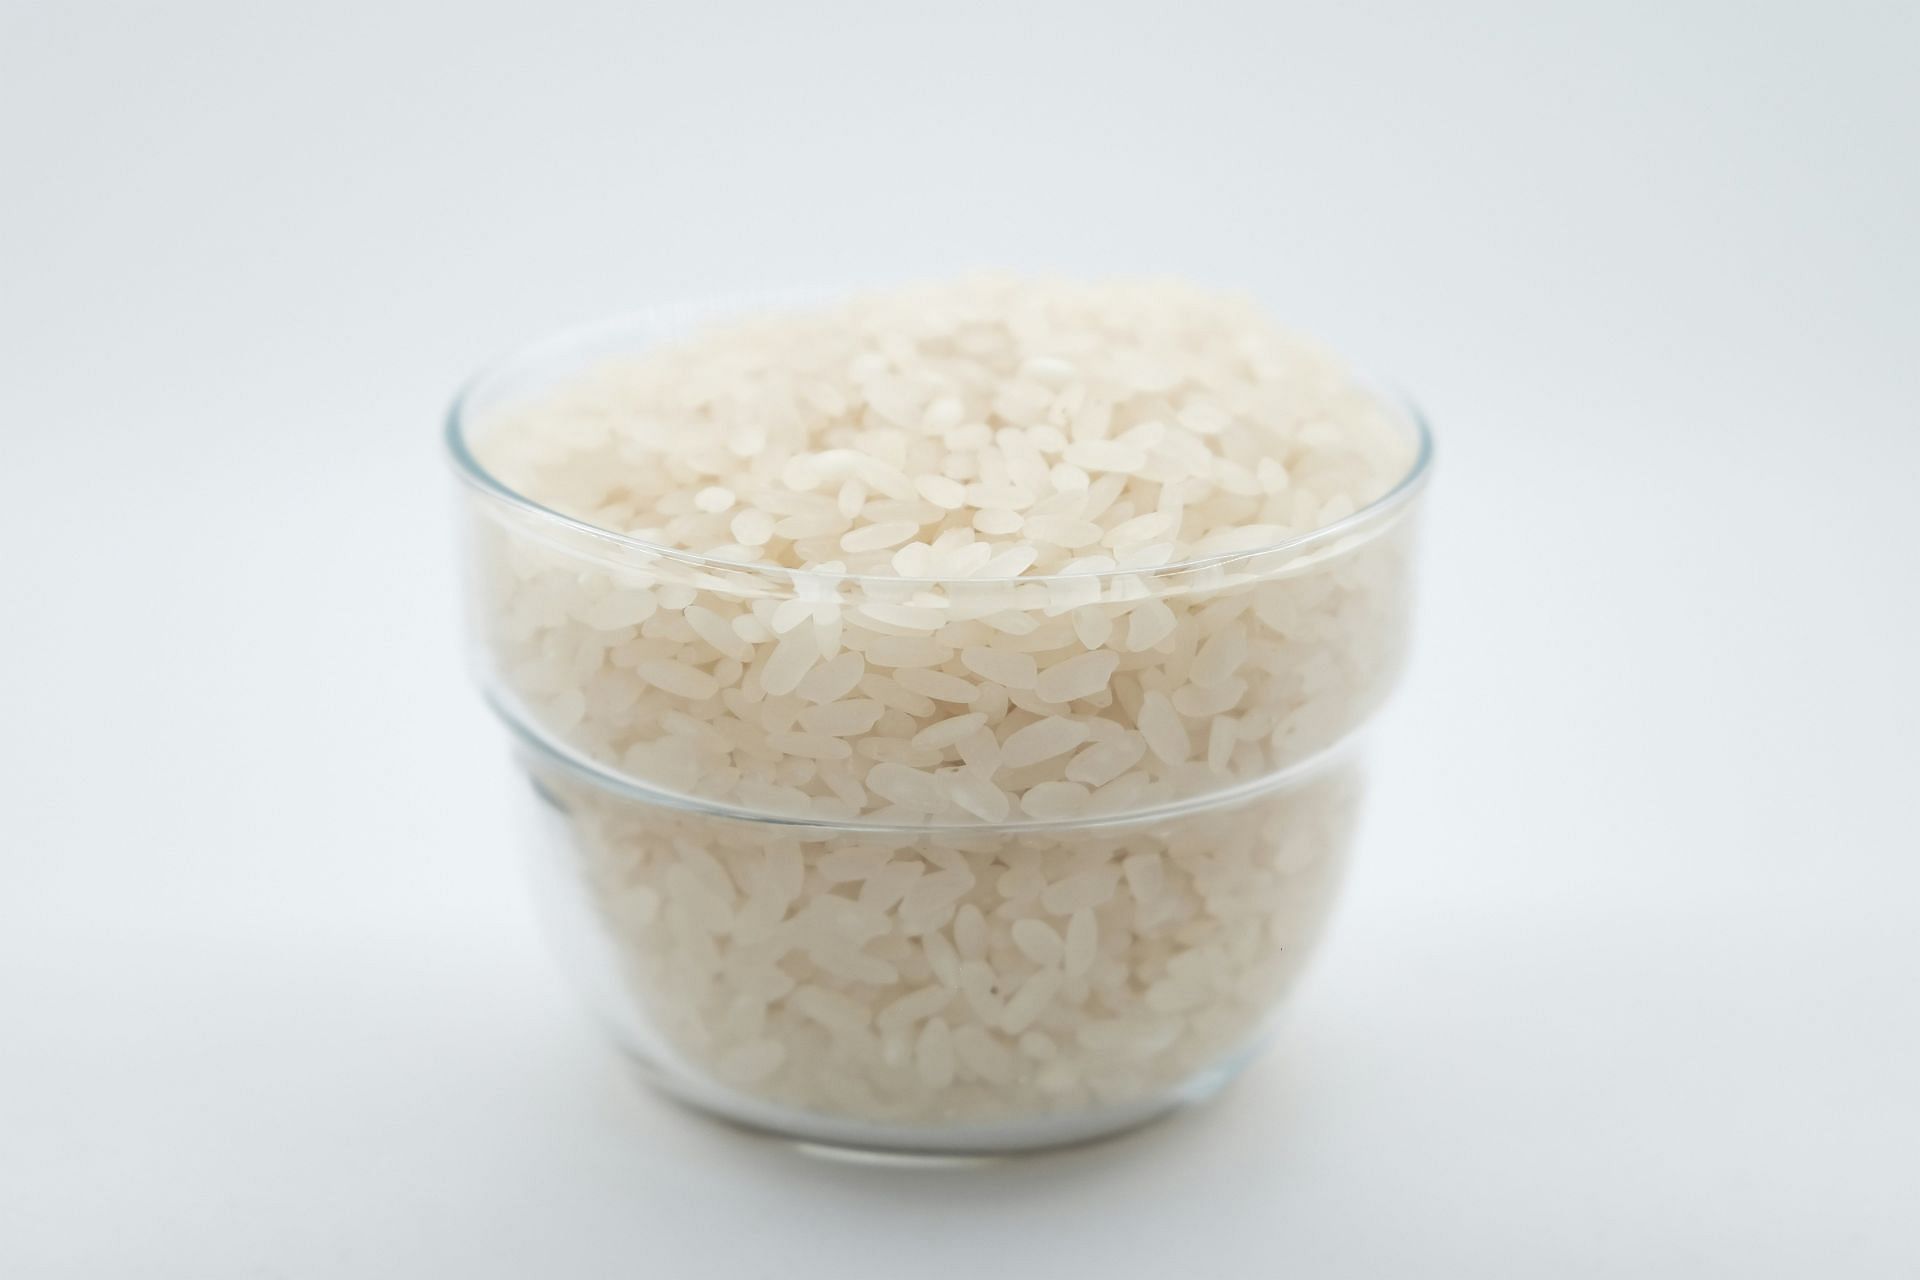 Rice diet plan with white or brown rice (Image by Mehmet Keskin/Unsplash)